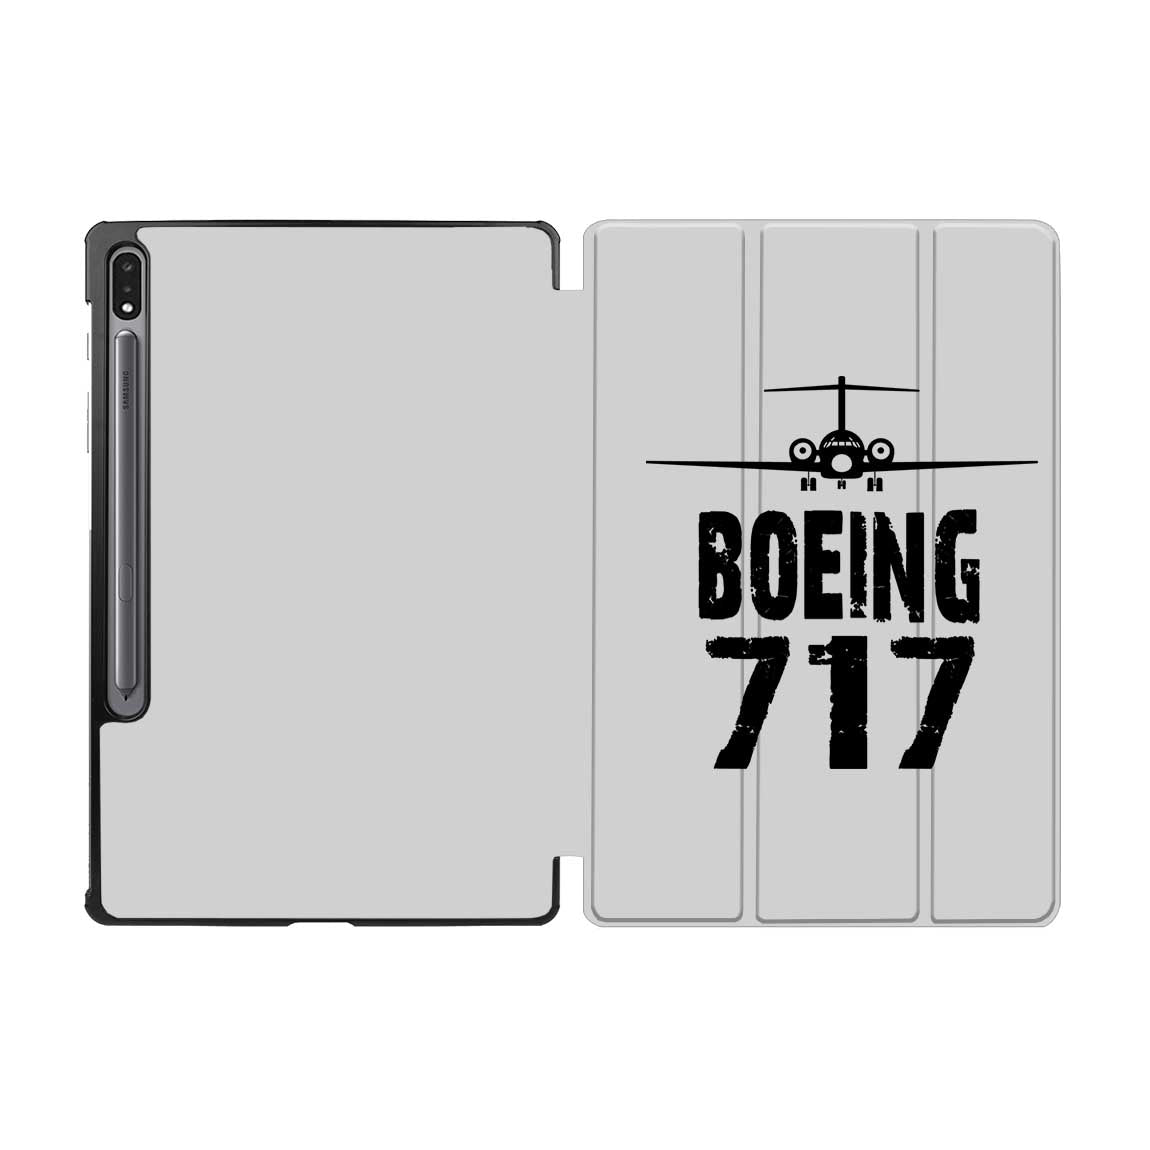 Boeing 717 & Plane Designed Samsung Tablet Cases